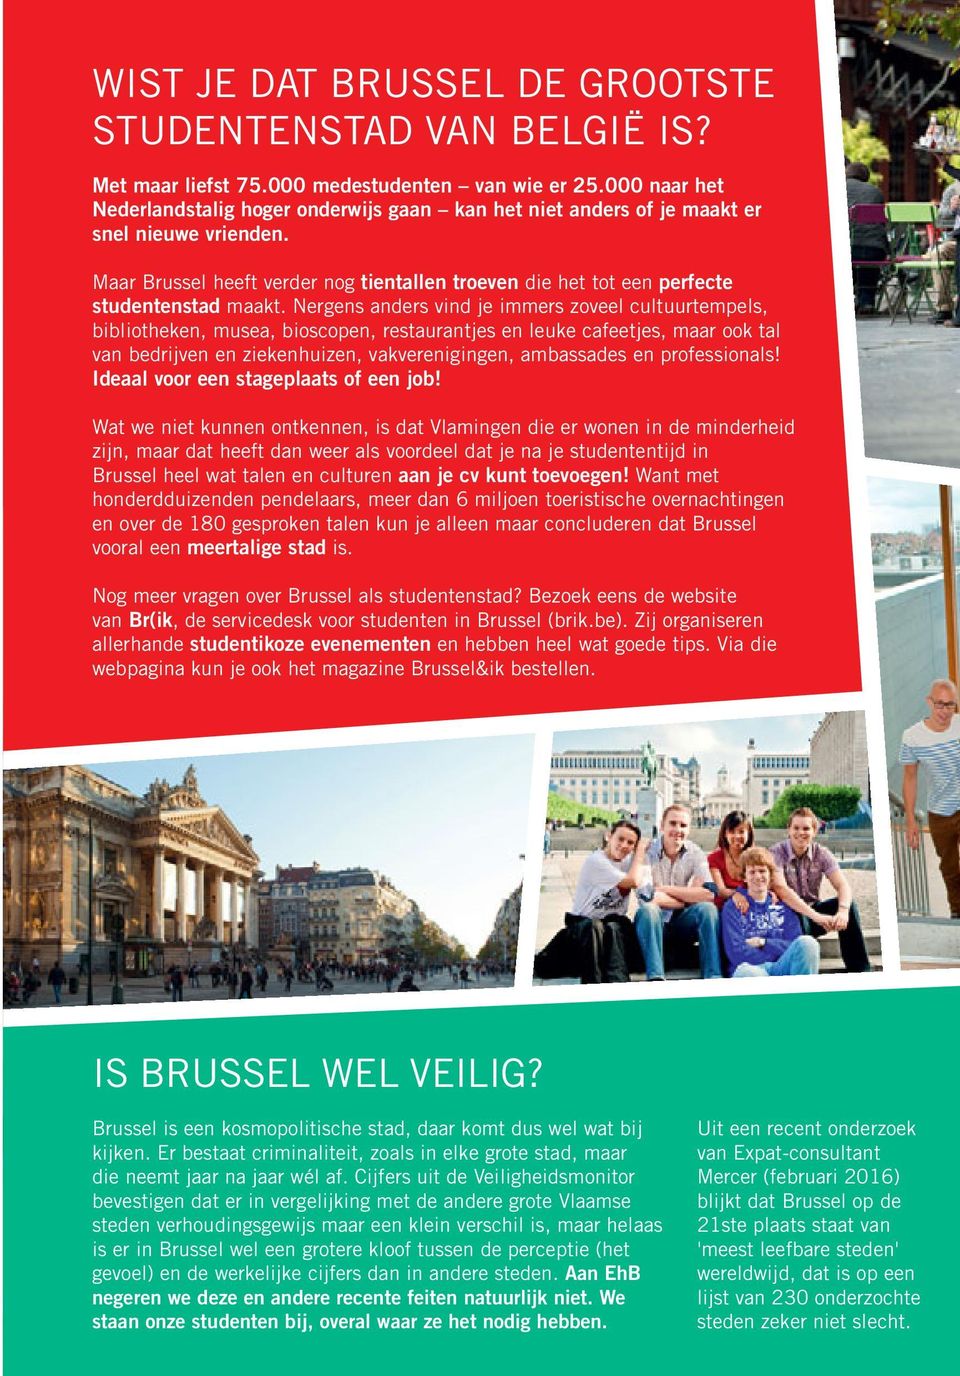 Maar Brussel heeft verder nog tientallen troeven die het tot een perfecte studentenstad maakt.